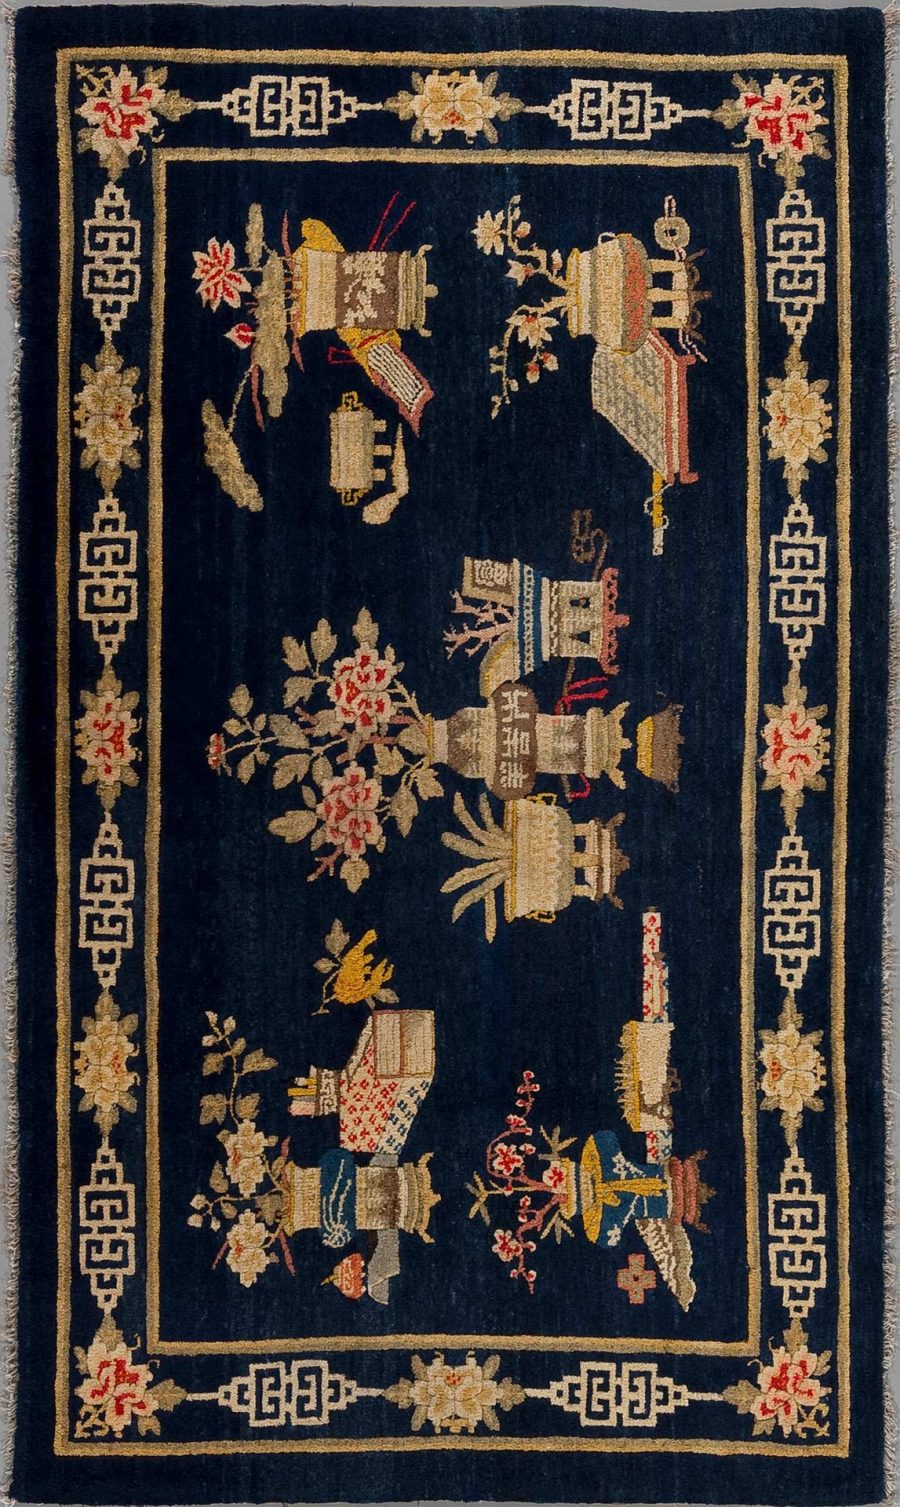 Antiker Teppich mit dunkelblauem Grund und orientalischem Dekor, umfasst florale Elemente und stilisierte Instrumente, umrandet von einem cremefarbenen und rot akzentuierten Griechisch-Schlüssel-Muster.